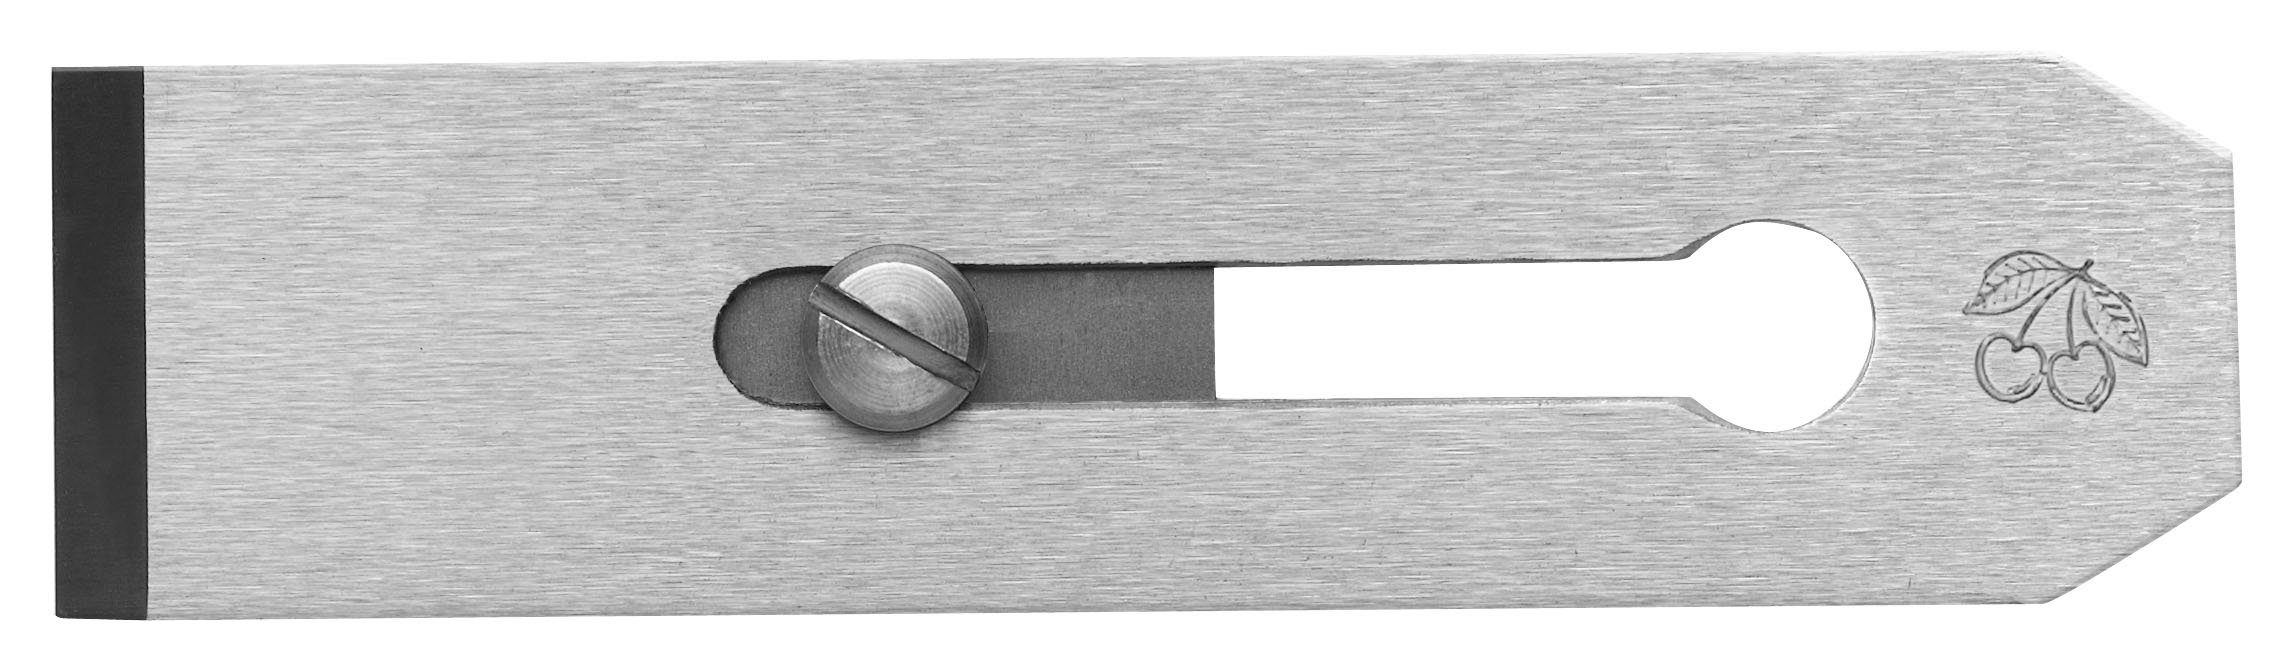 Kirschen Hobelmesser KIRSCHEN Doppelhobeleisen - 45mm